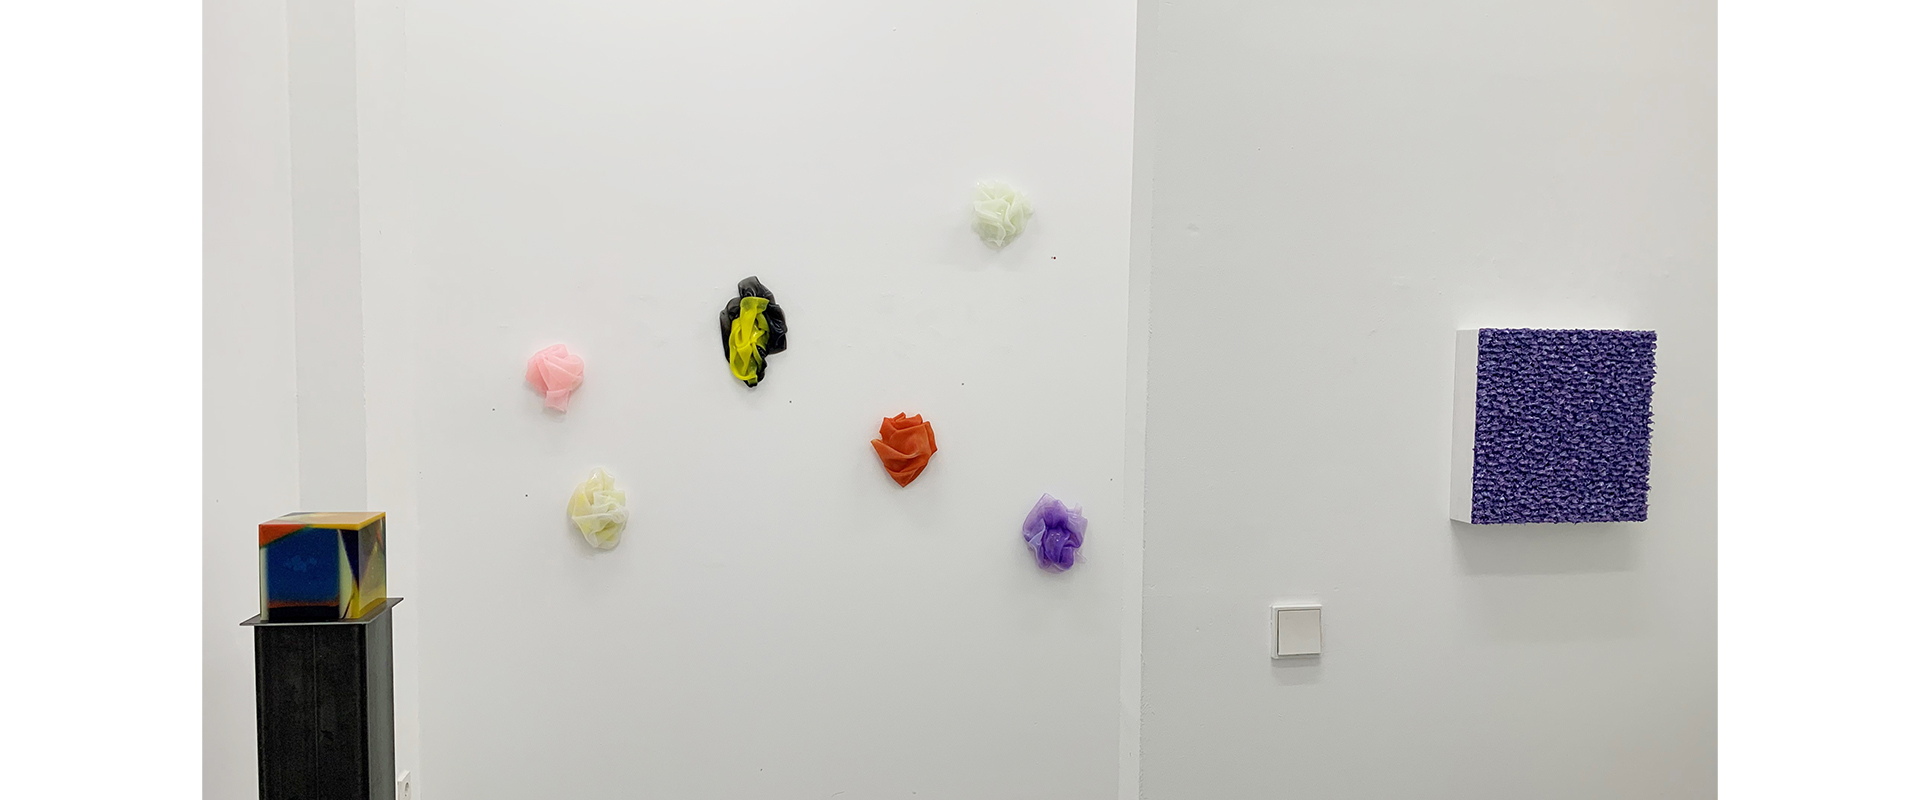 Ausstellungsansicht "color constructs. Harald Pompl - Robert Sagerman", Galerie Renate Bender 2021